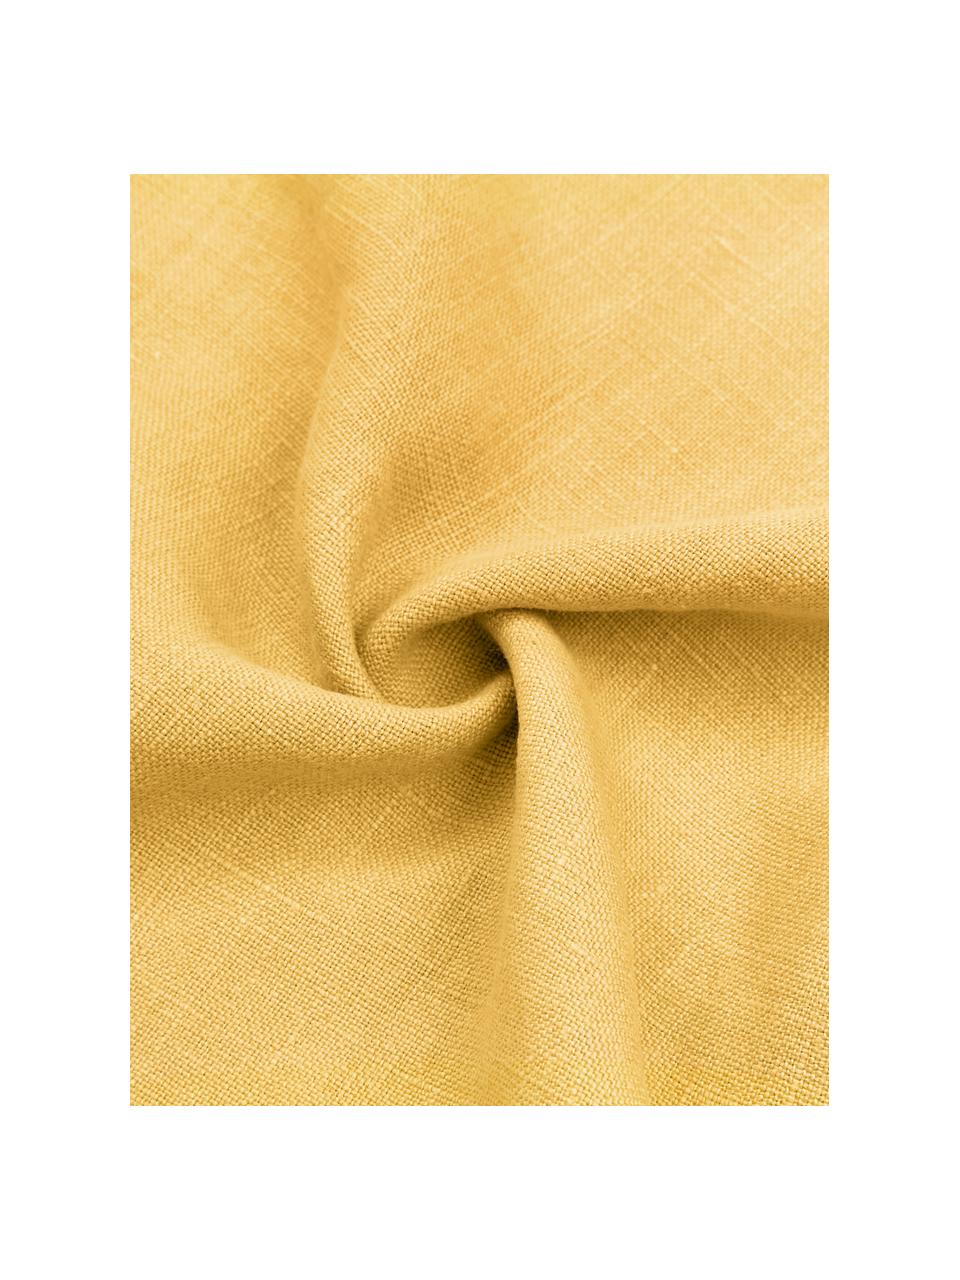 Housse de coussin pur lin jaune Luana, 100 % pur lin

Le lin est naturellement doté d'un toucher plutôt rugueux et d'un aspect froissé
Sa résistance élevée au accrocs lui confère robustesse et longévité, Jaune, larg. 40 x long. 40 cm